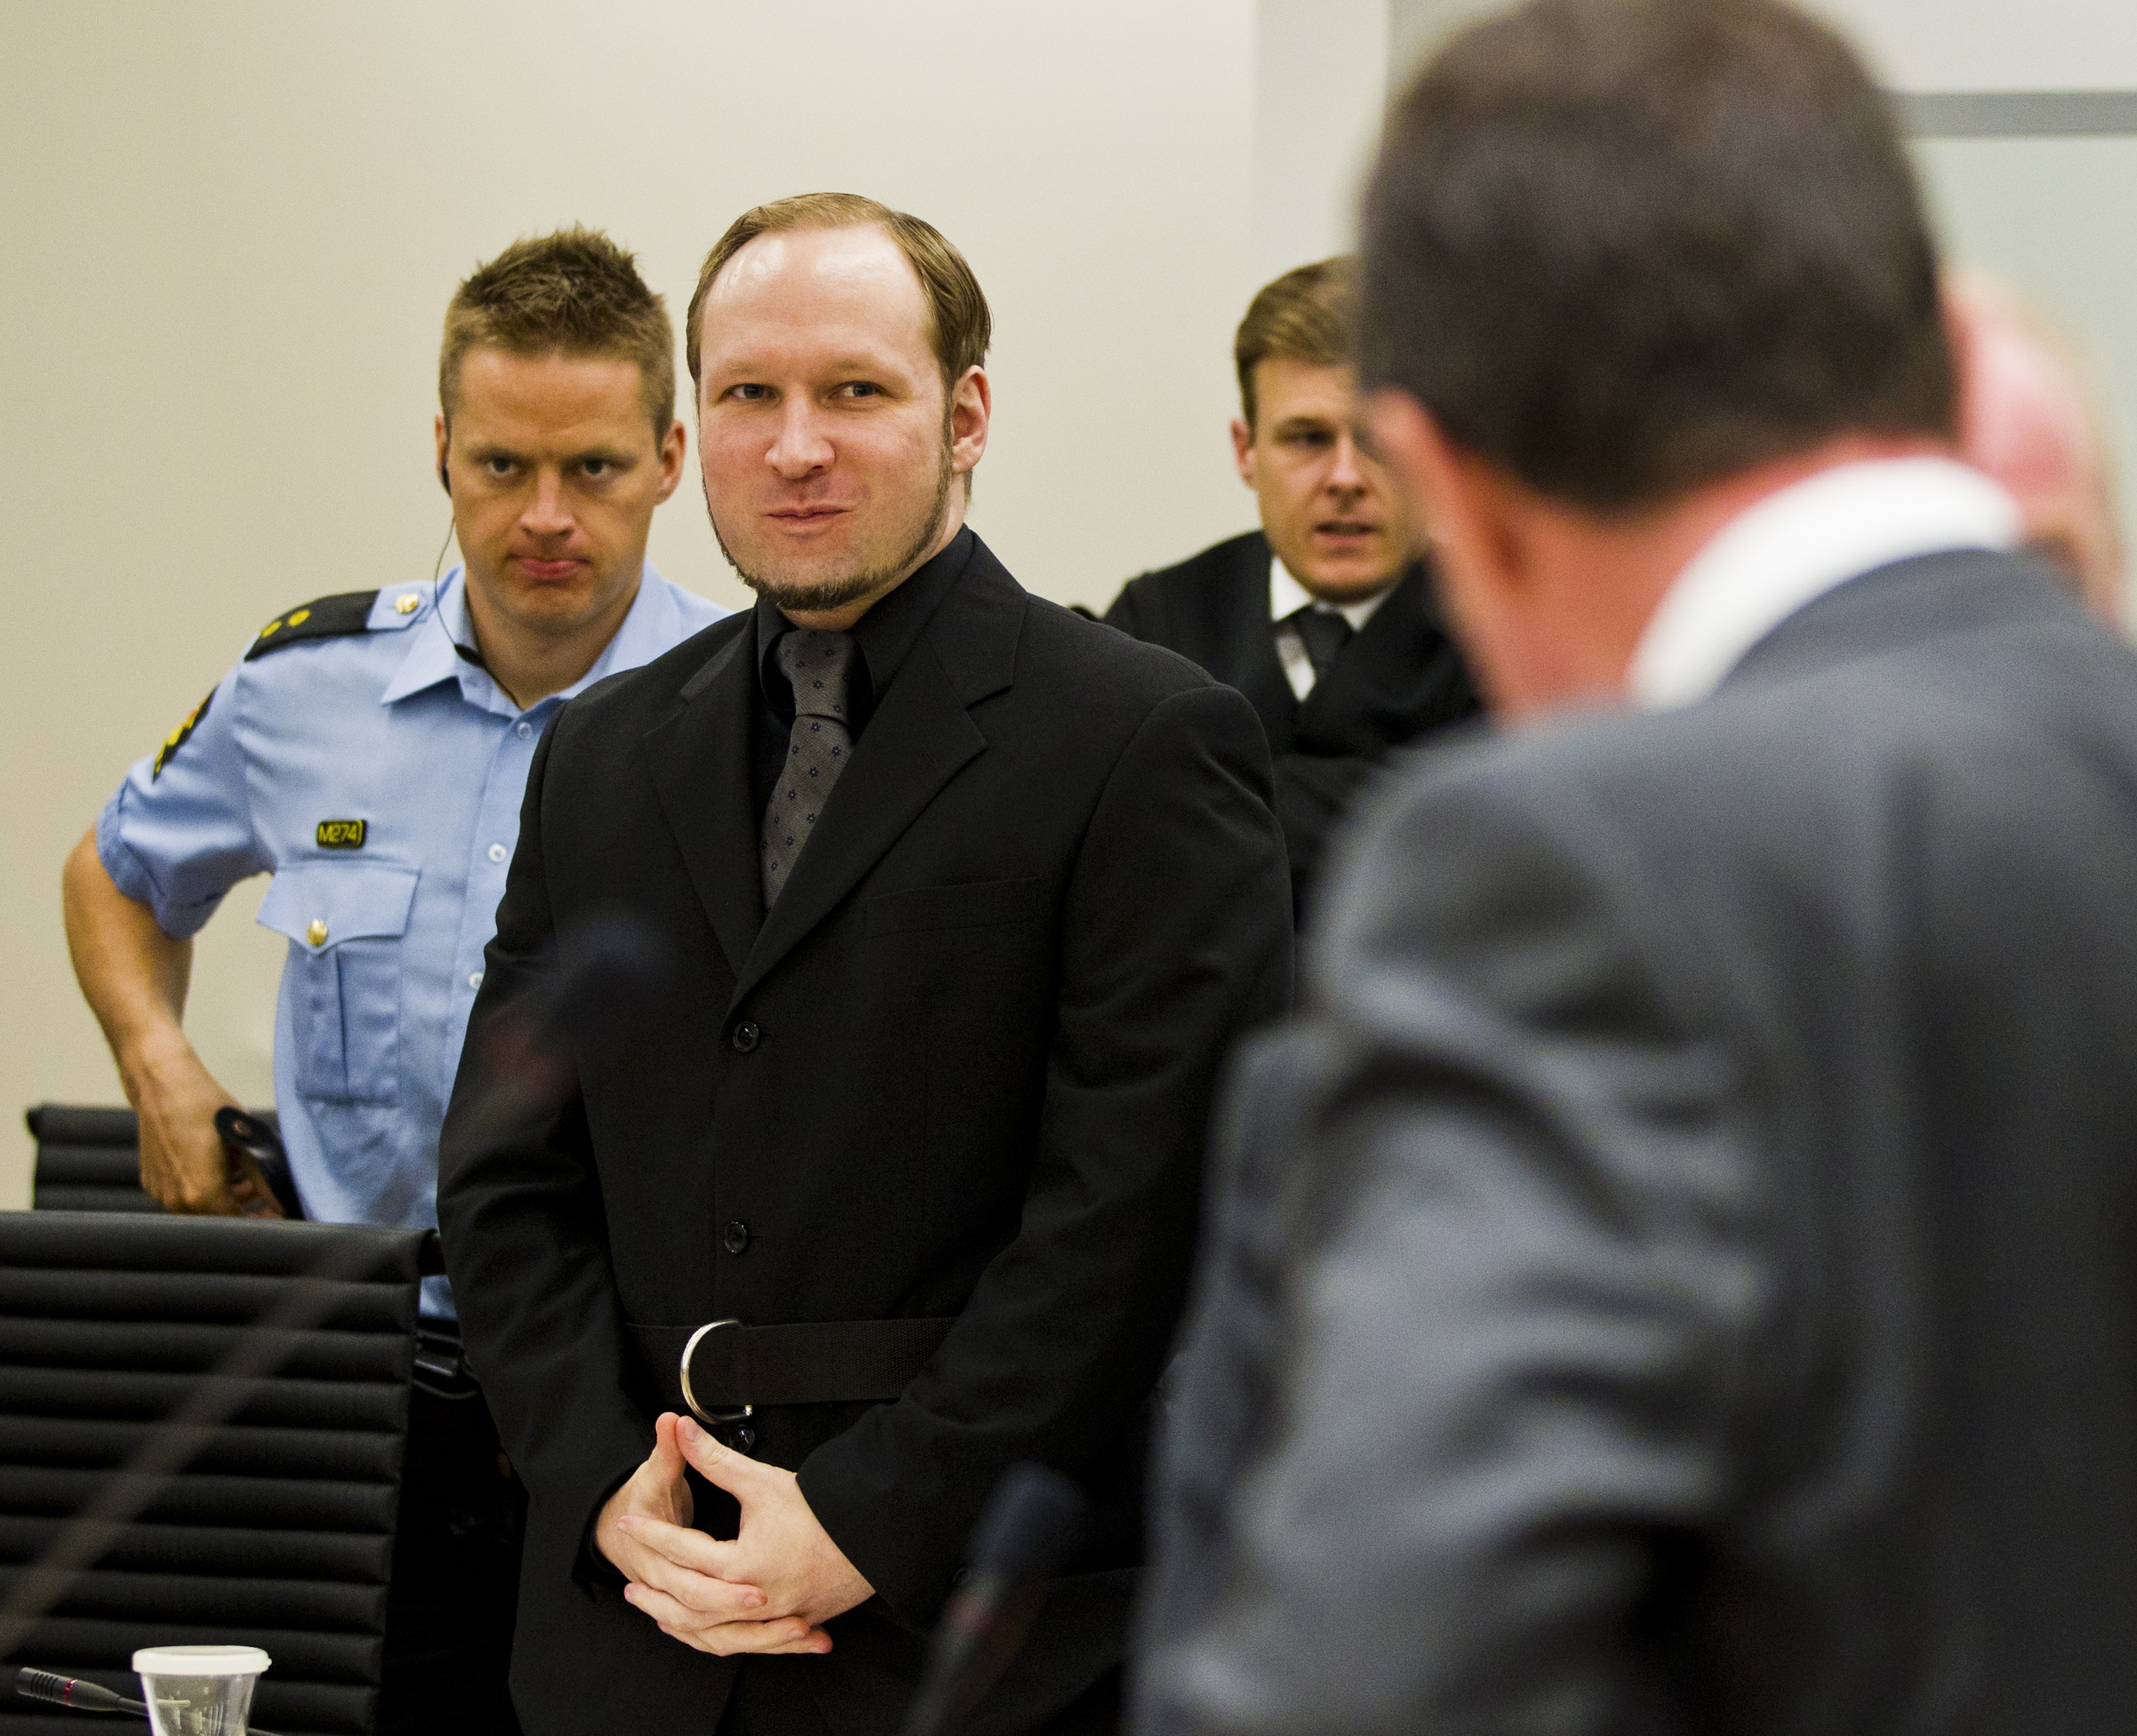 Massmördare, Anders Behring Breivik, Oslo, Åklagare, Rättegång, terrorist